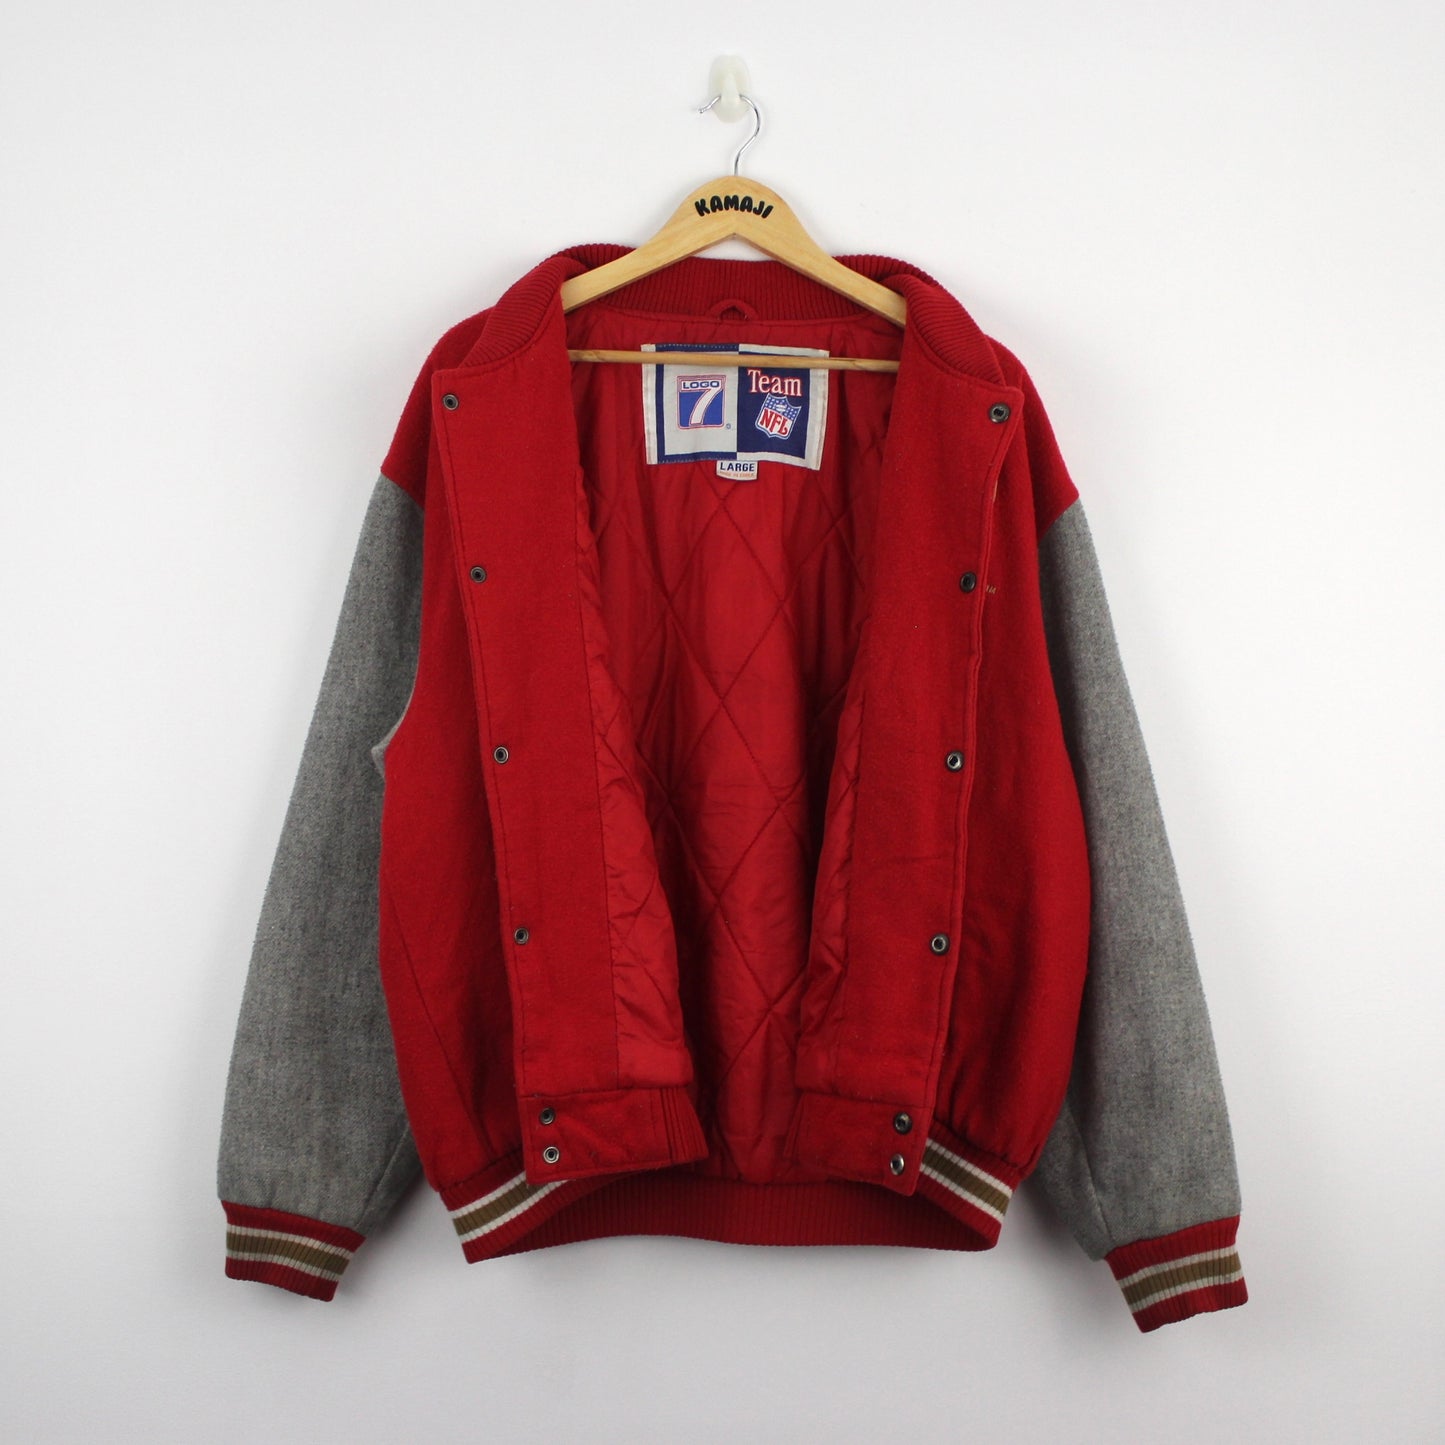 San Francisco Vintage Varsity Jacket, Official Logo 7 NFL Tag (L)